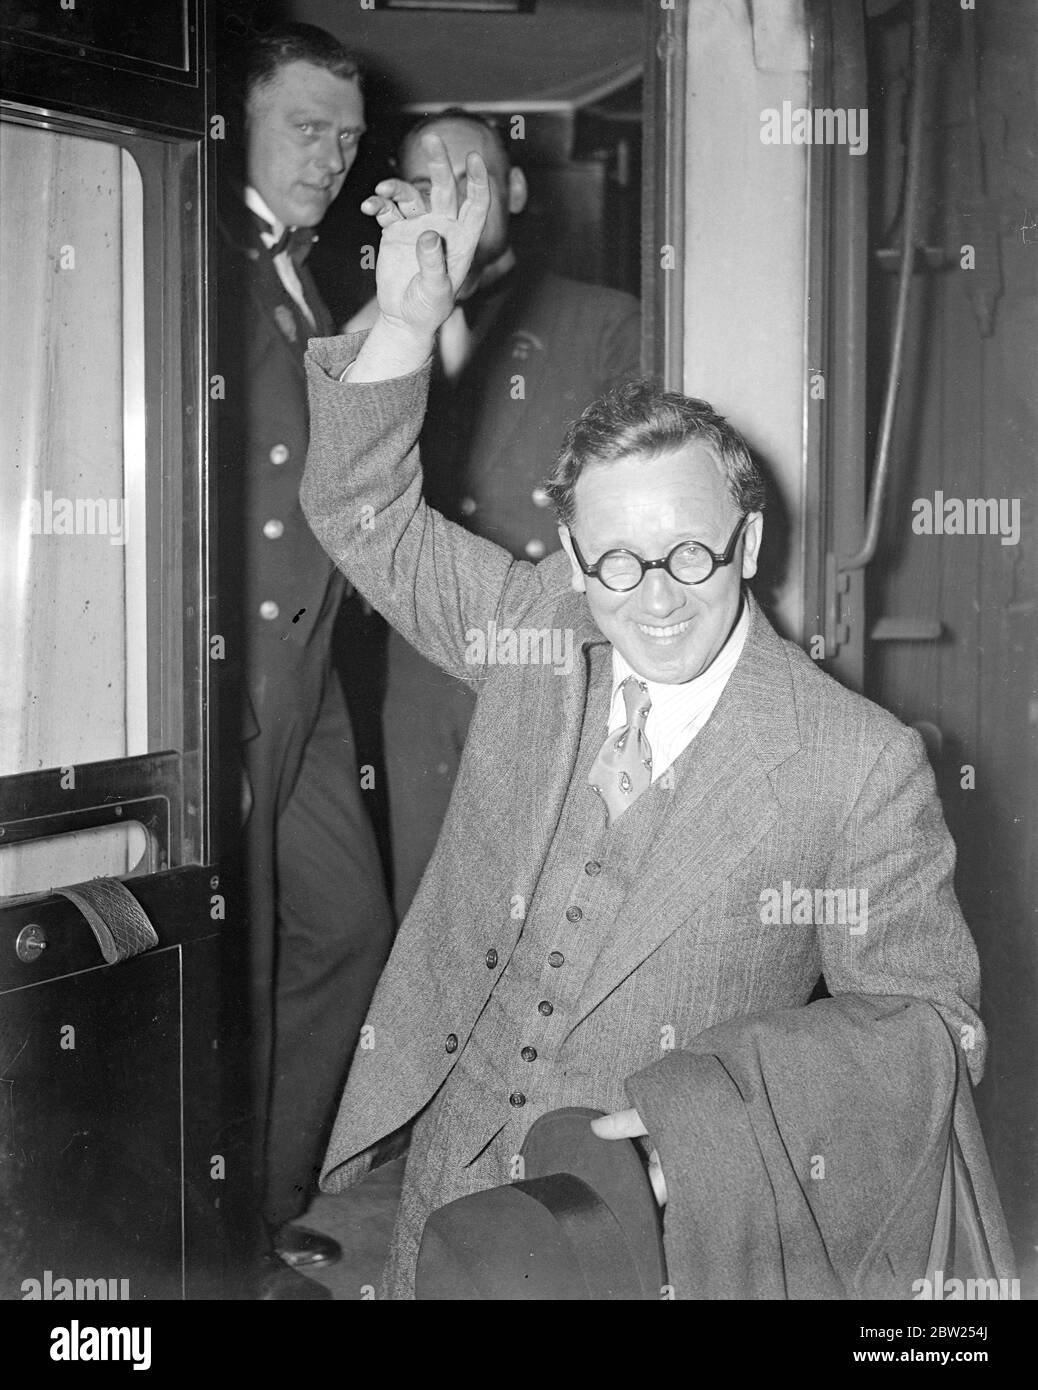 Herbert Morrison kehrt von der amerikanischen Vortragsreise zurück. Herbert Morrison, Leiter des Londoner County Council, lächelte bei seiner Ankunft am Bahnhof Paddington mit dem Manhattan-Bootszug von seiner Amerika-Vortragsreise. 27. April 1938 Stockfoto